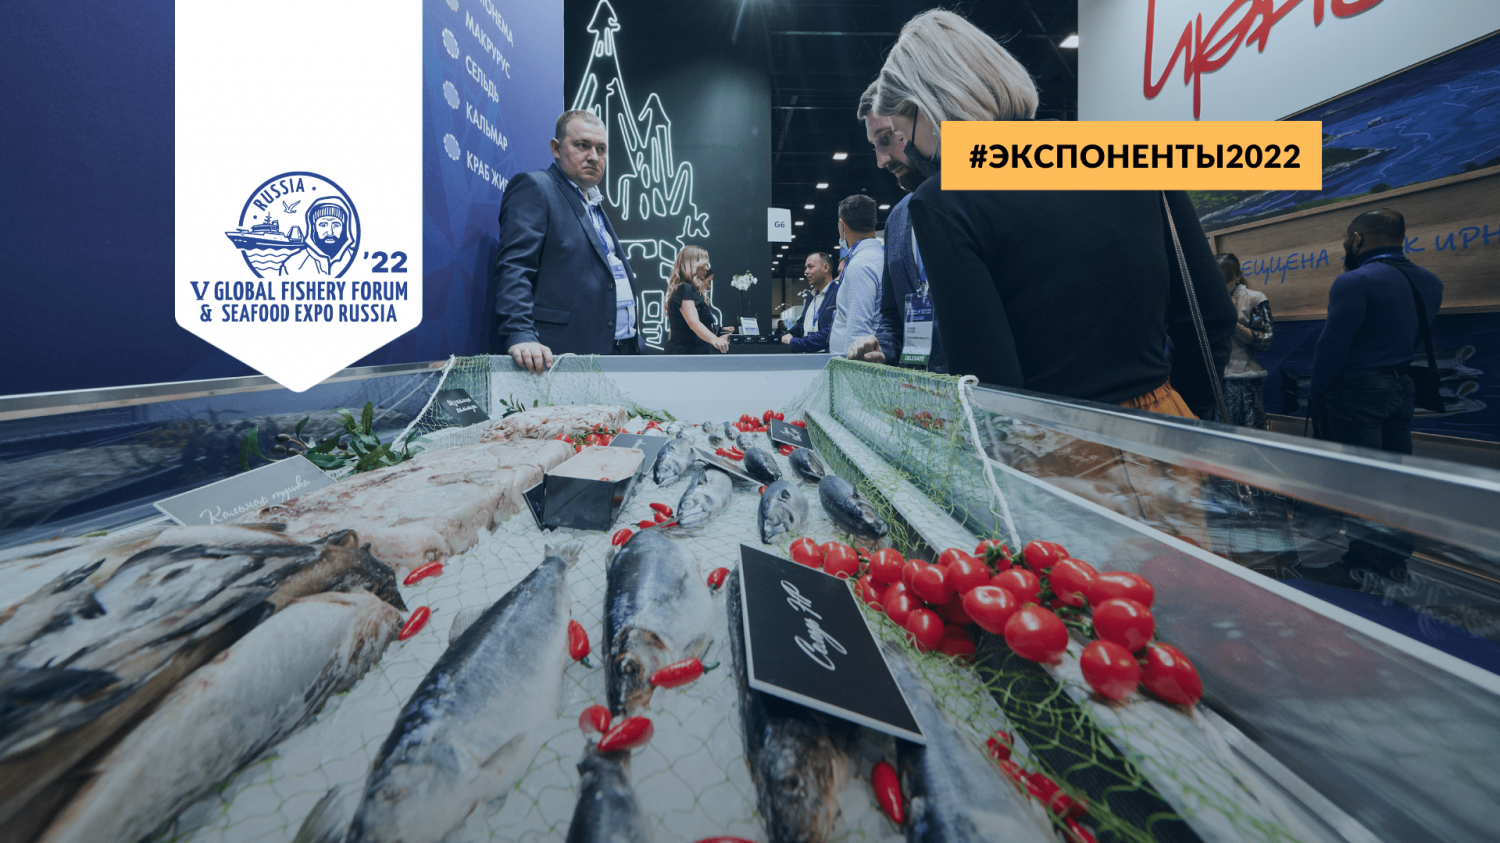 Seafood Expo Russia 2022: Обзор новых участников № 2